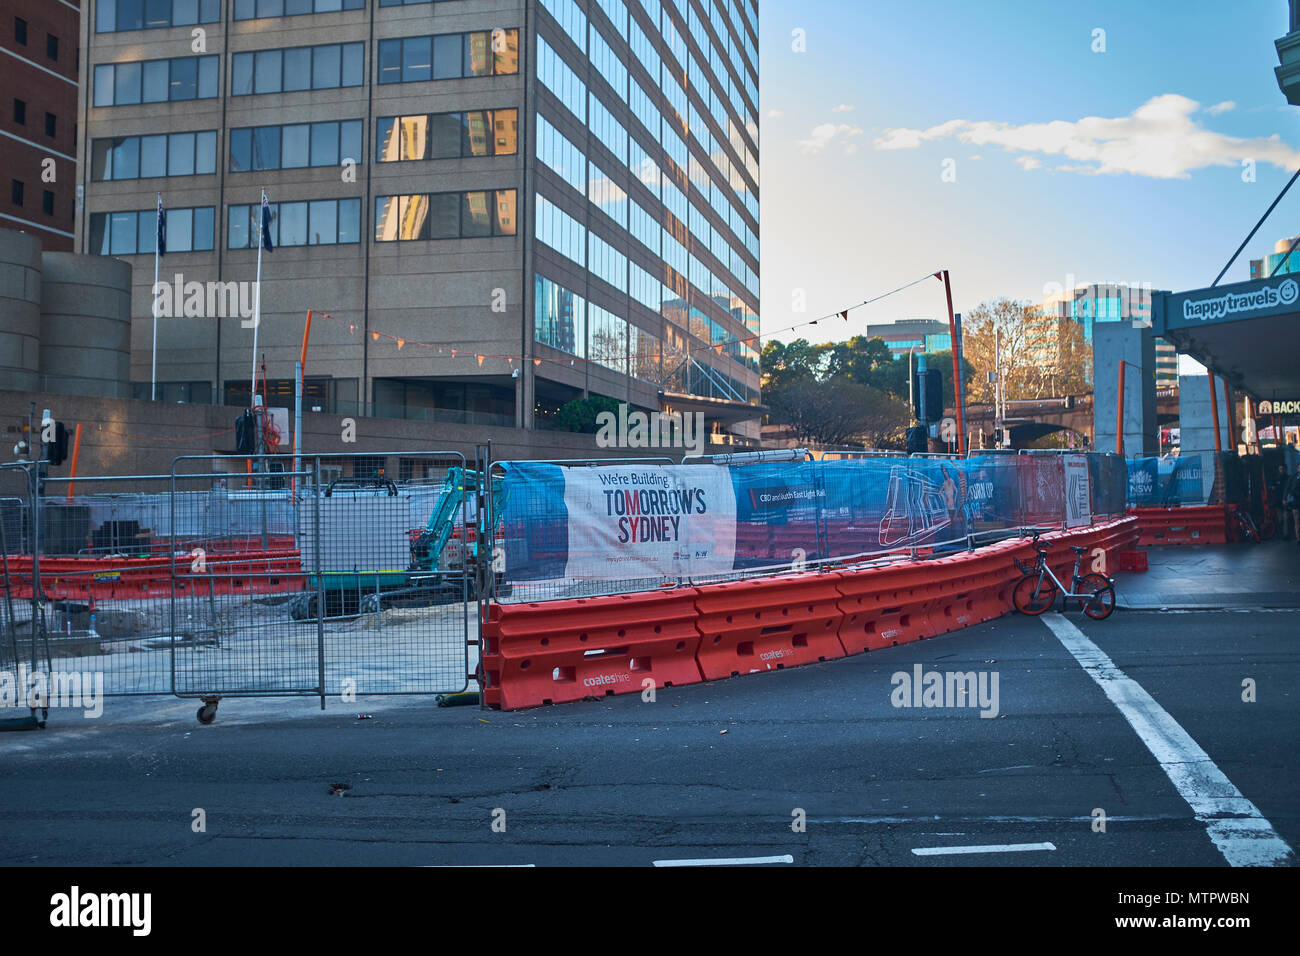 Szene eines Raums der Bau in Sydney aufgrund einer neuen U-Bahn System mit dem Zeichen 'bauen wir morgen Sydney' sind auf temporäre Fechten Stockfoto